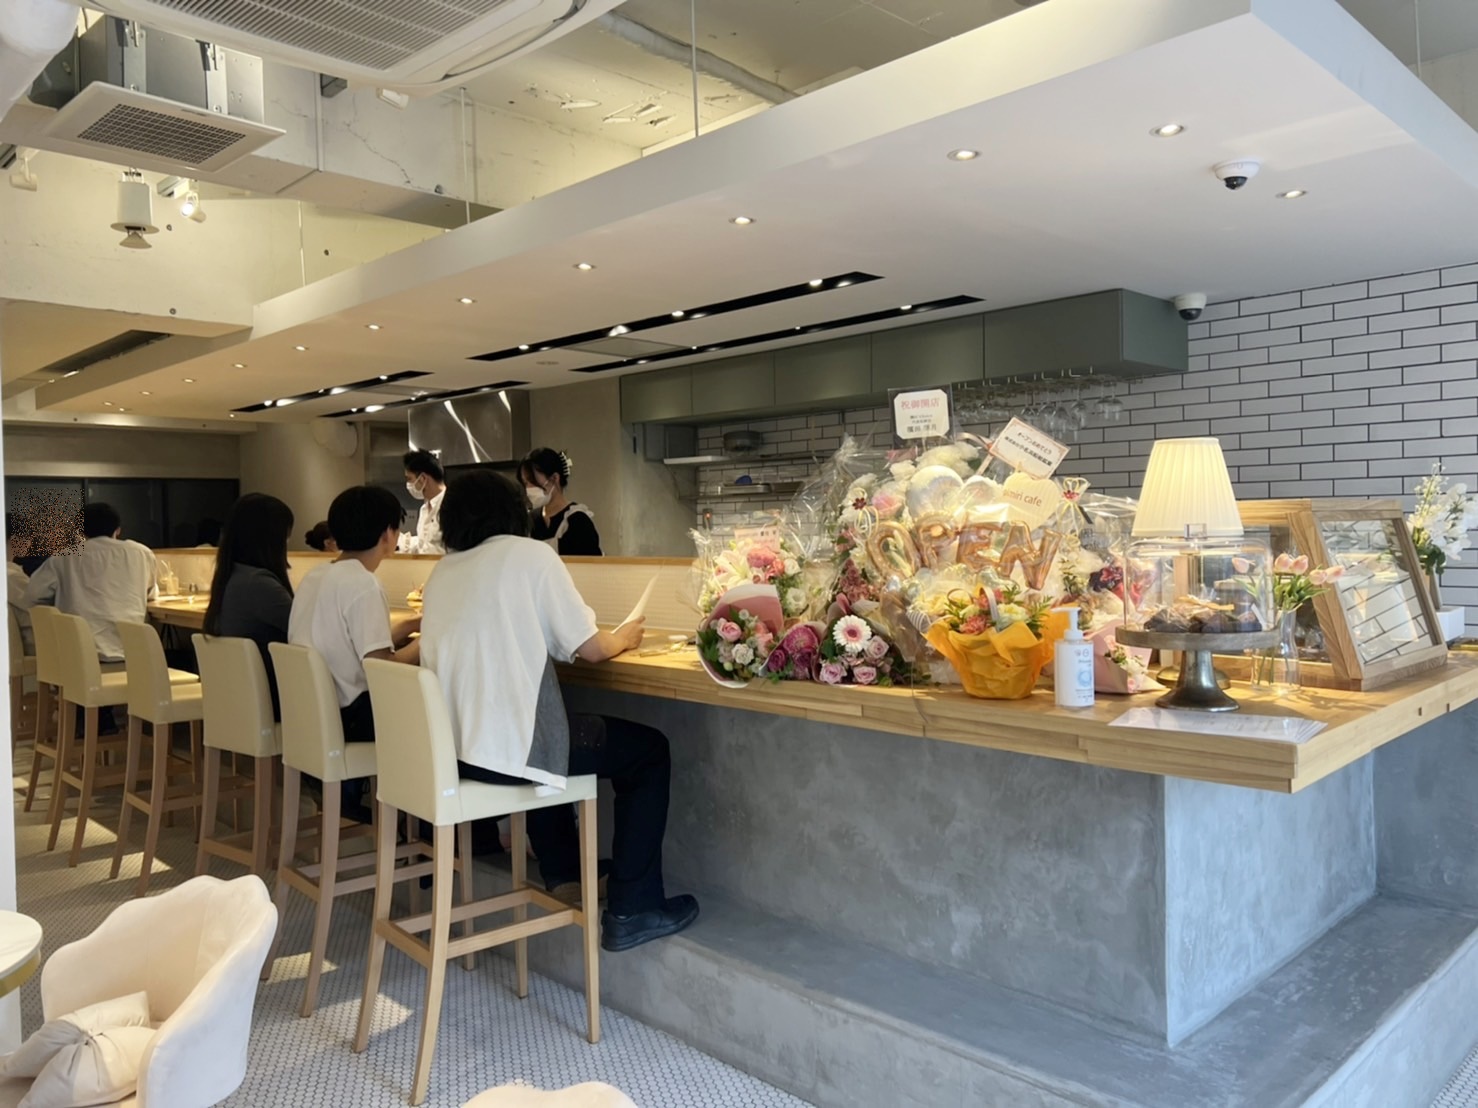 立川市 クロッフルもちもち オープンした韓国風カフェ Pimiri Cafe へ行ってきました ヨッチ Yahoo Japan クリエイターズプログラム